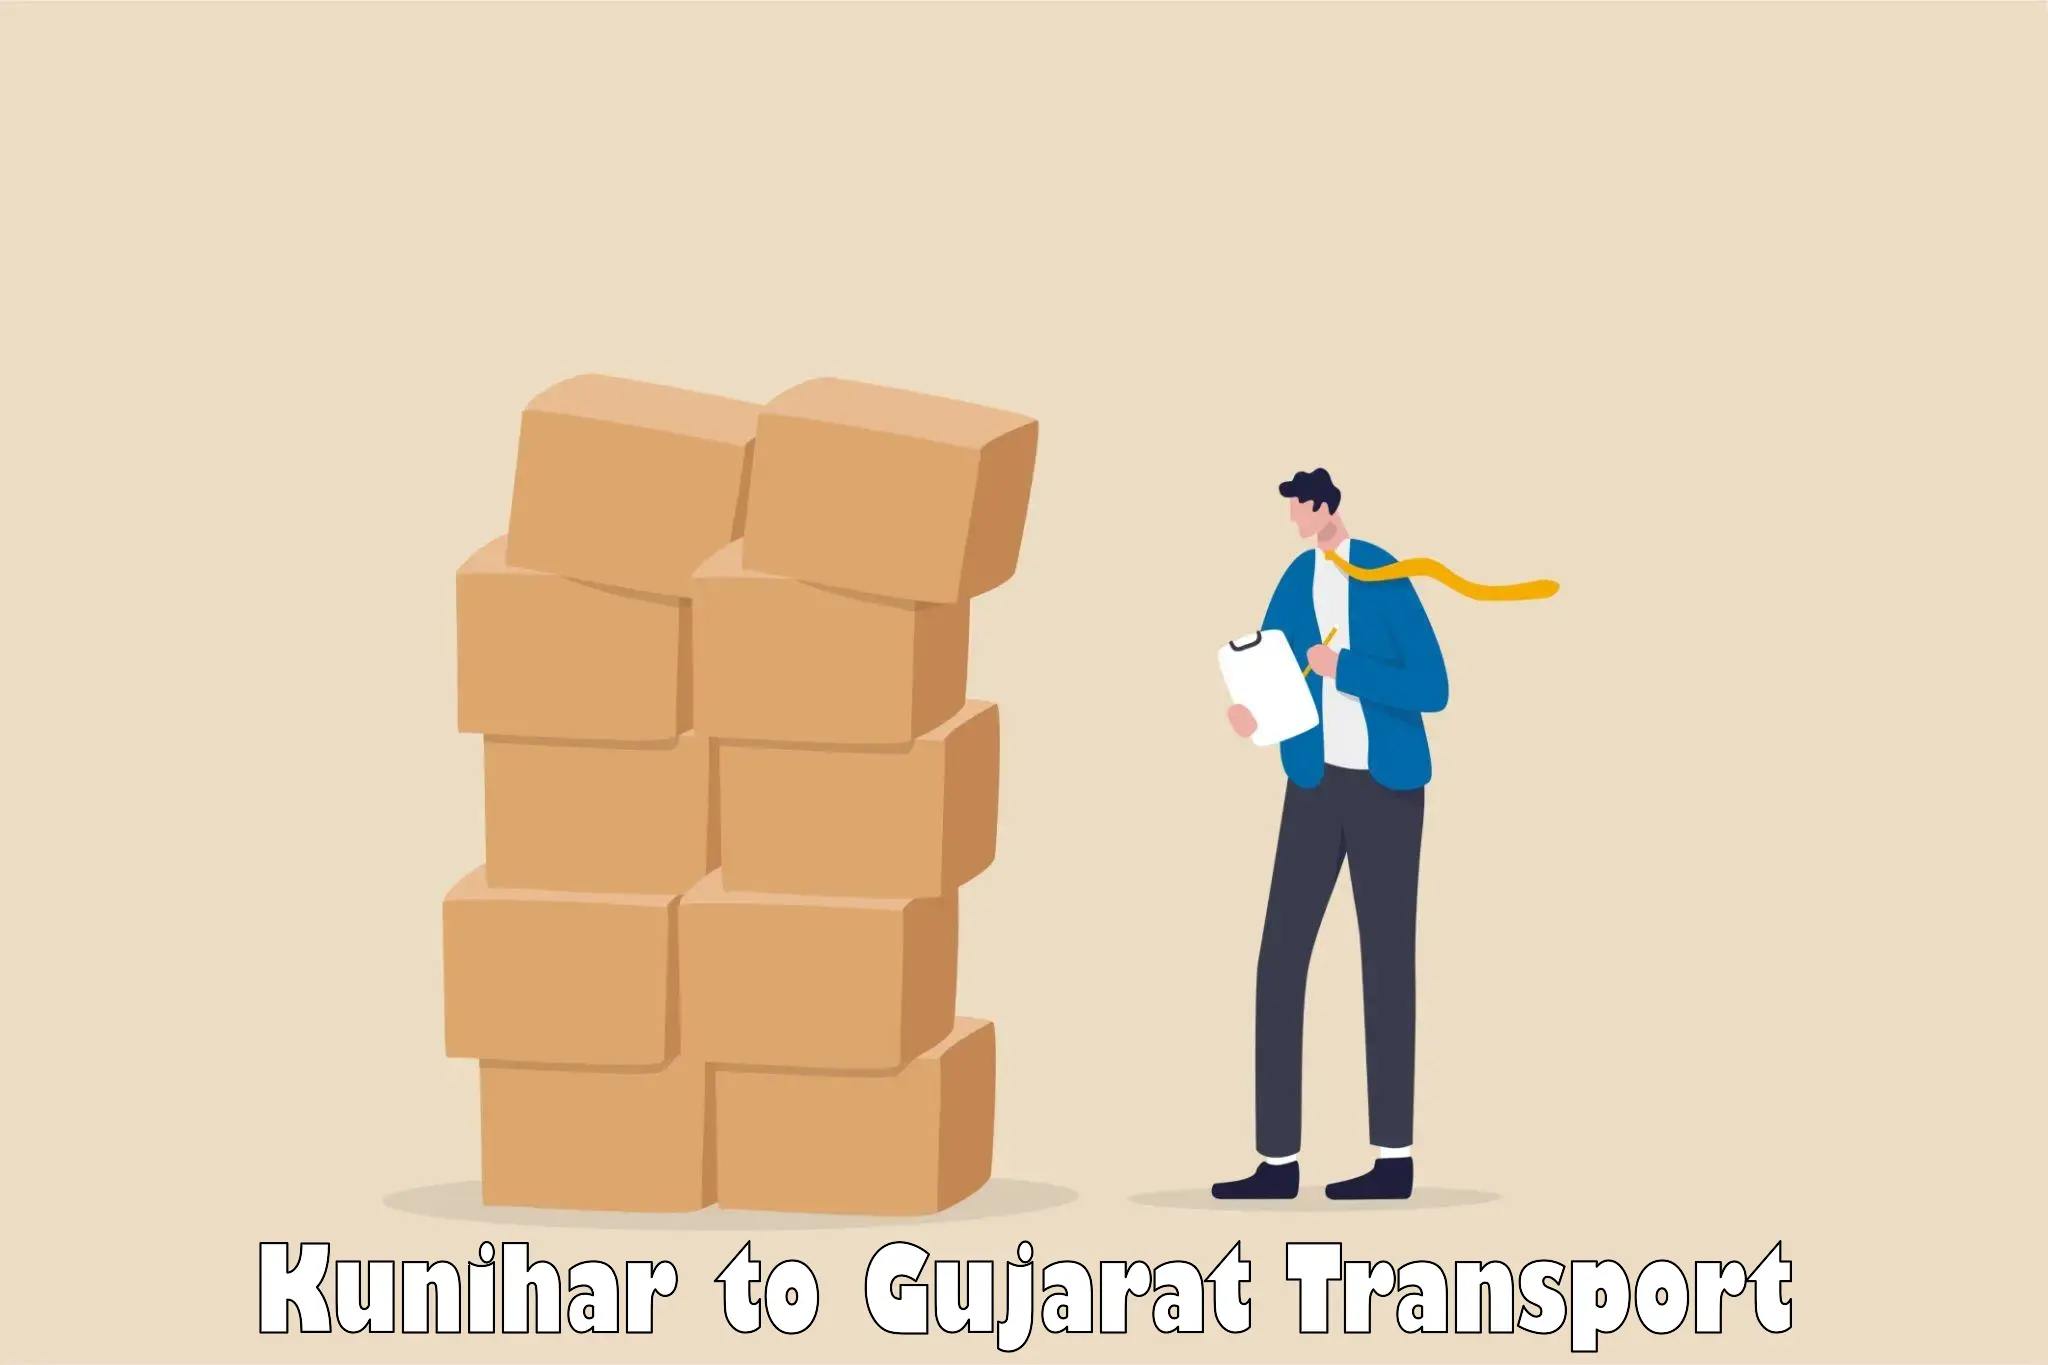 Transport in sharing Kunihar to Bopal